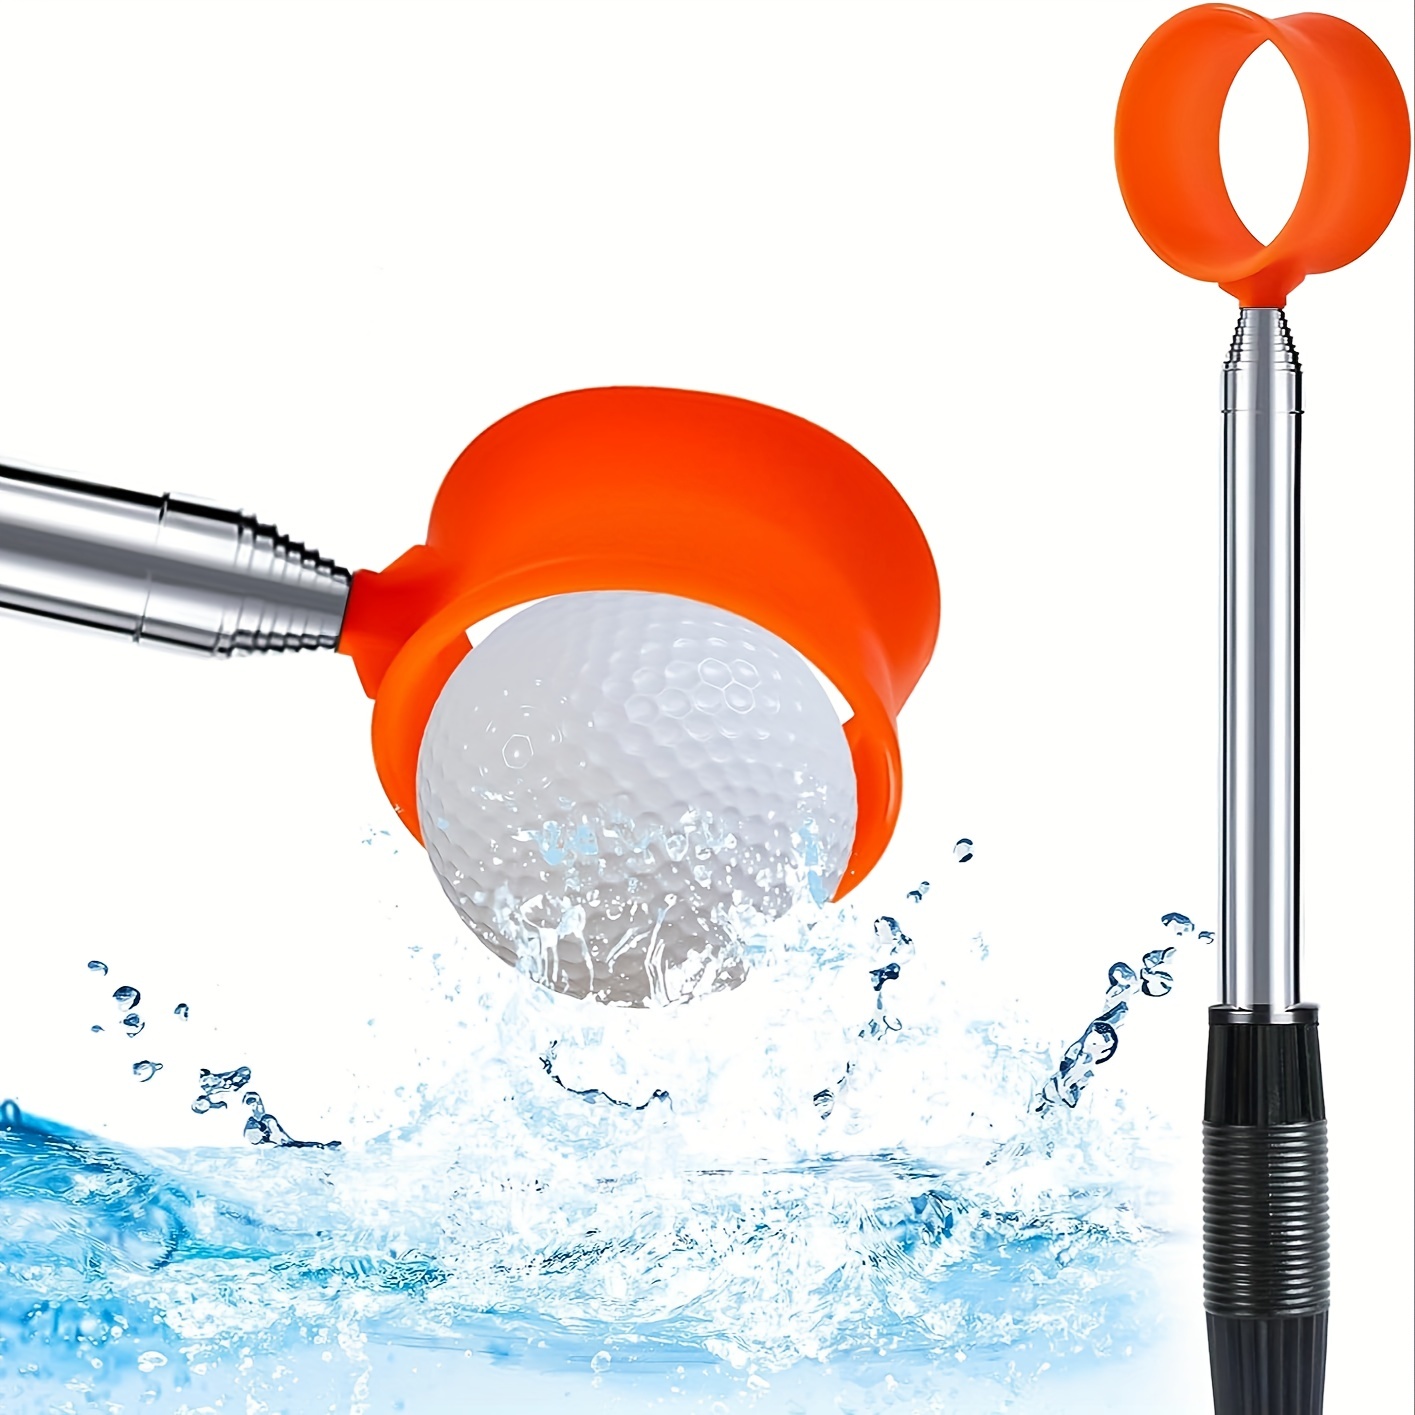 

Golf Ball Retriever, 9ft/12ft Aluminum Alloy Golf Ball Retriever, Telescopic Golf Accessories